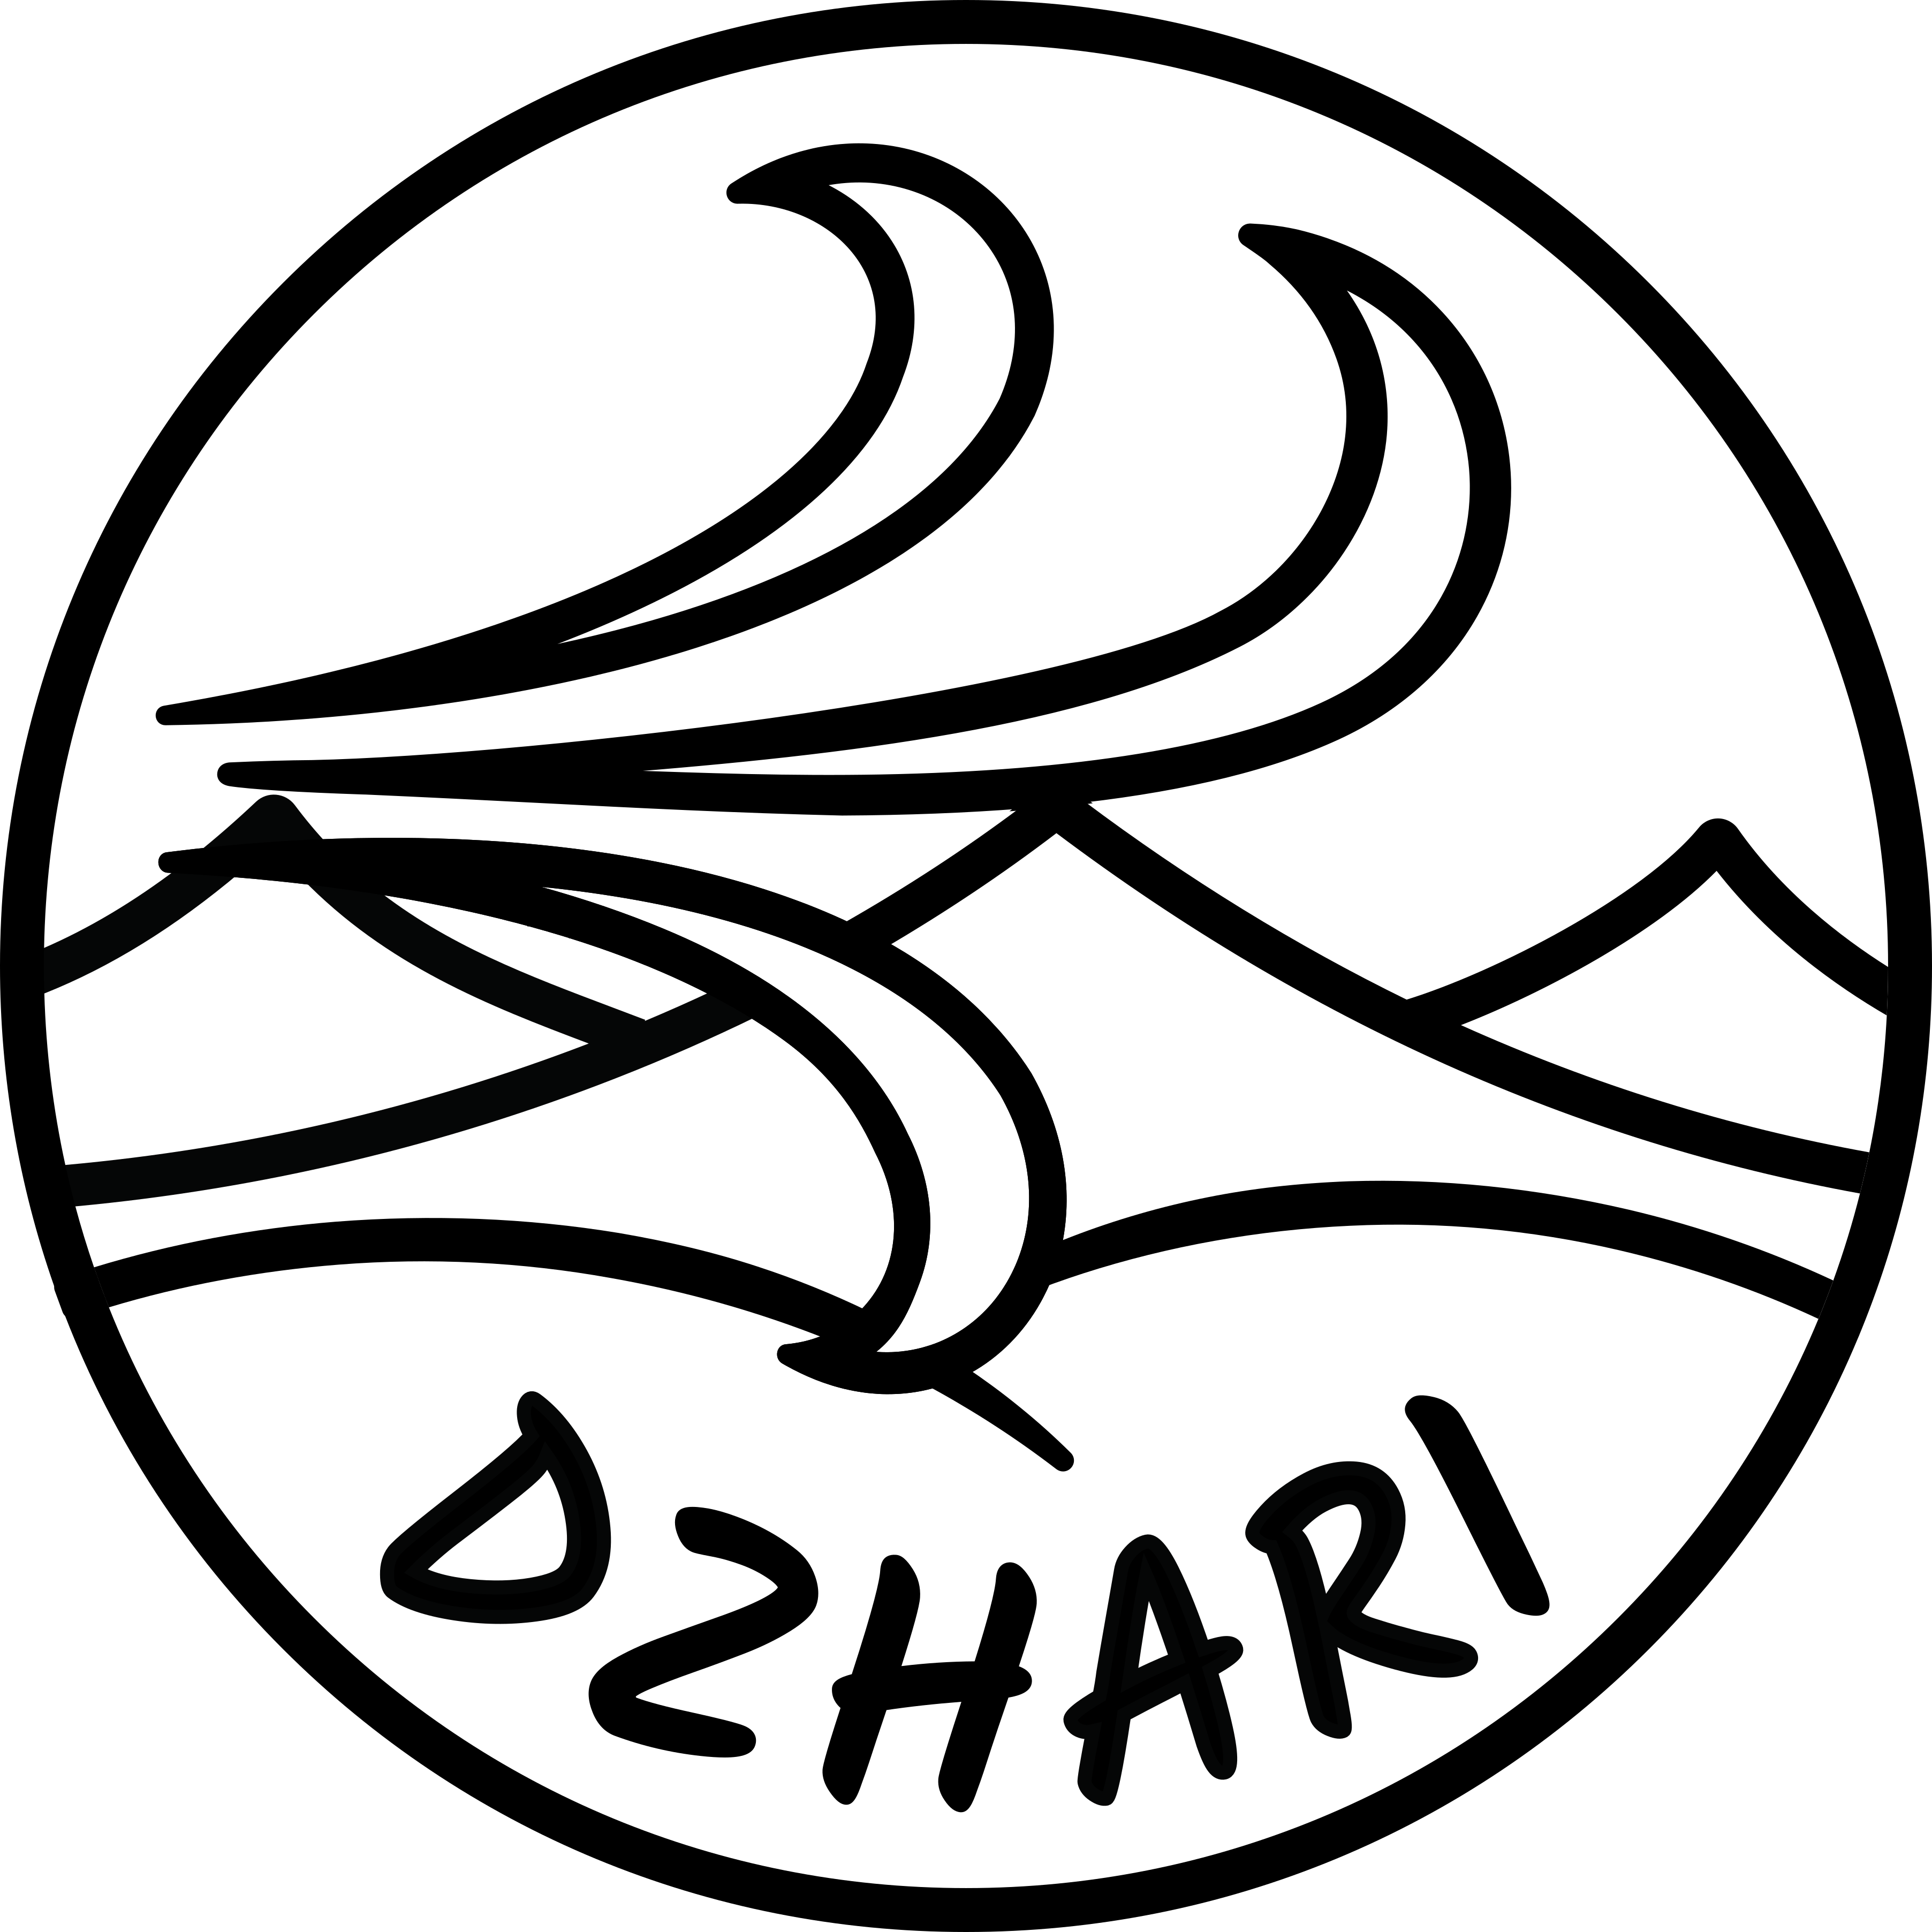 Dzhari